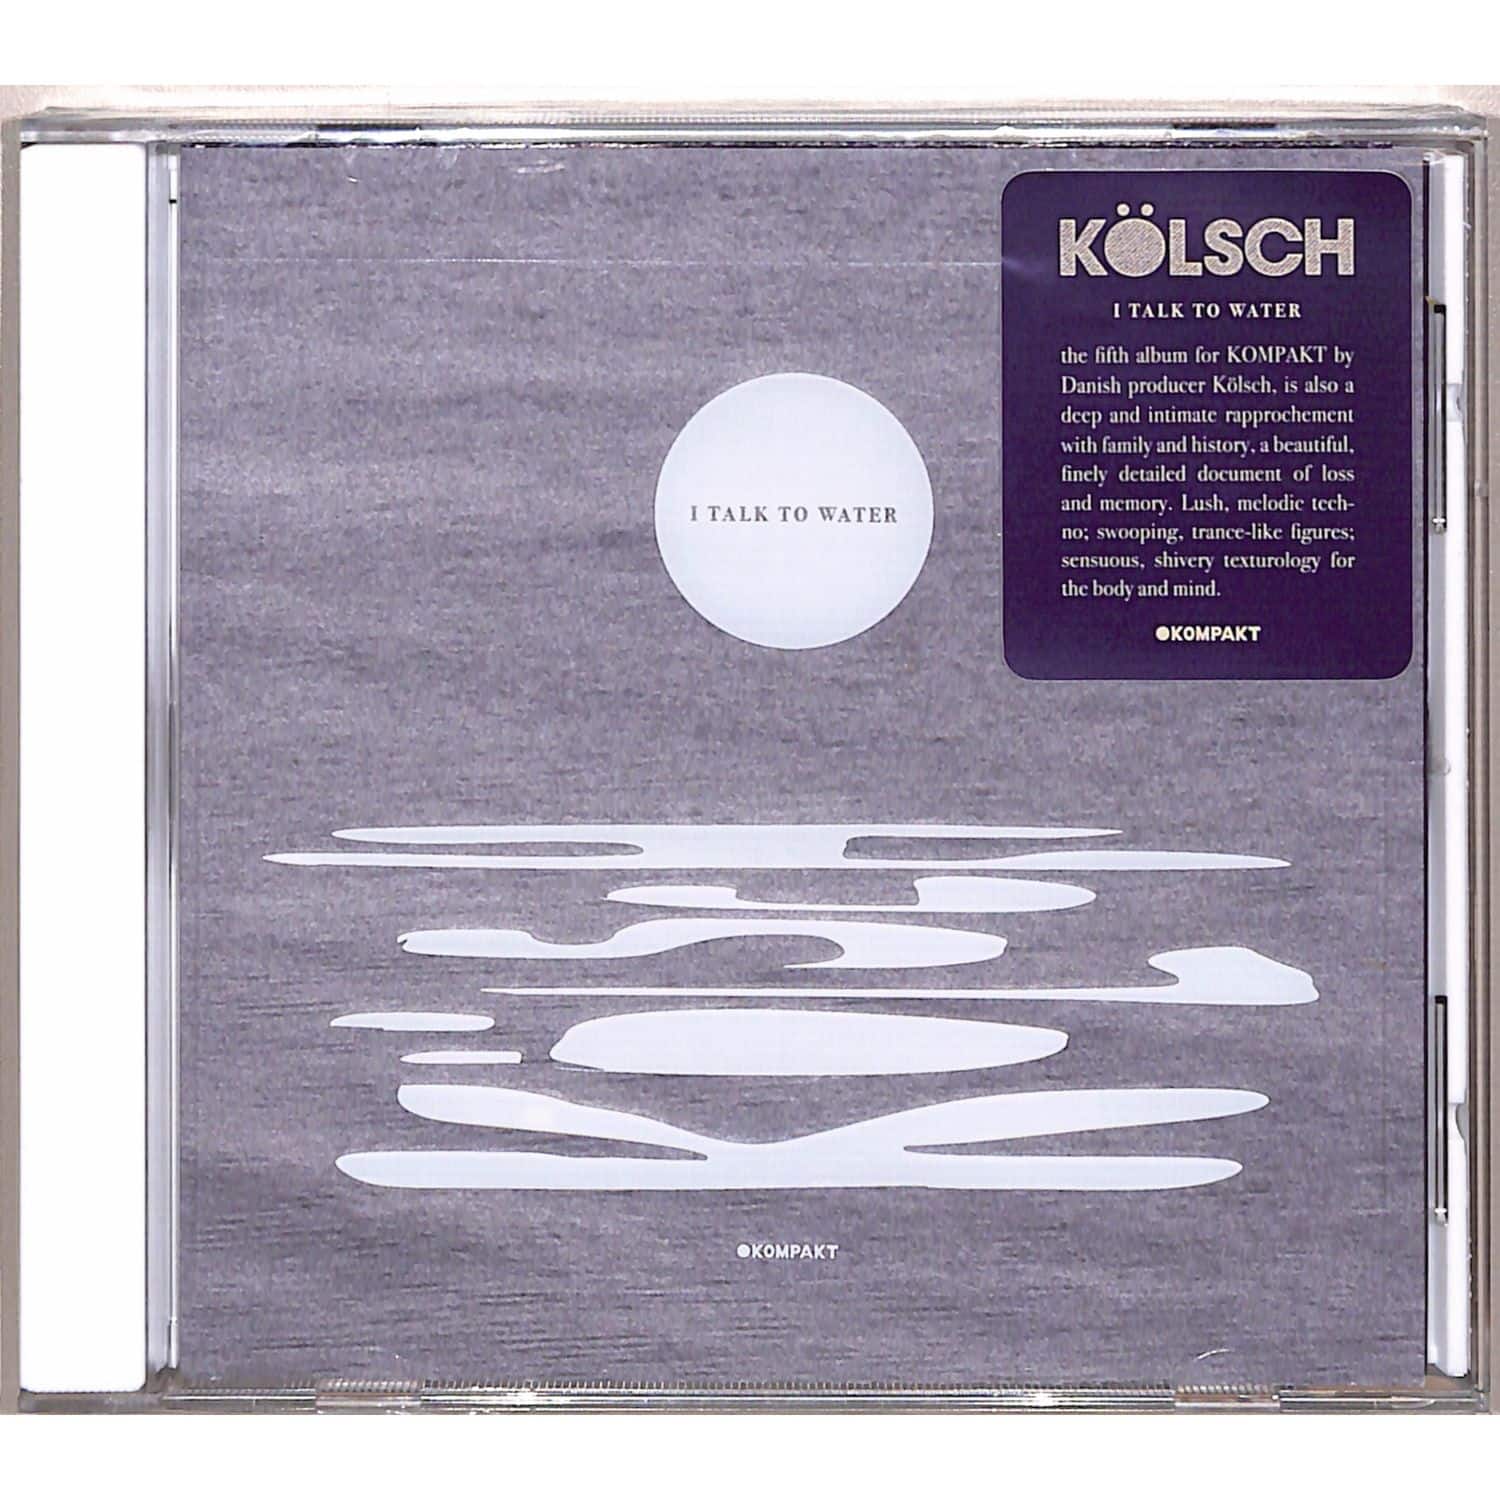 Klsch - I TALK TO WATER 